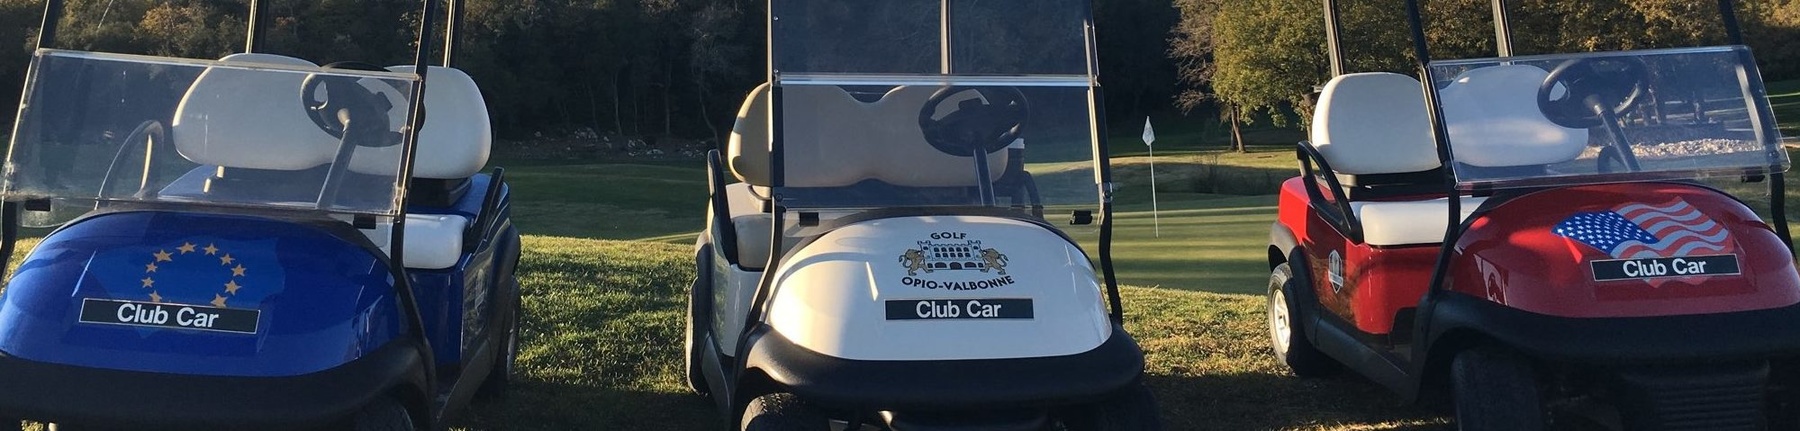 Club Car at Open Golf Venues